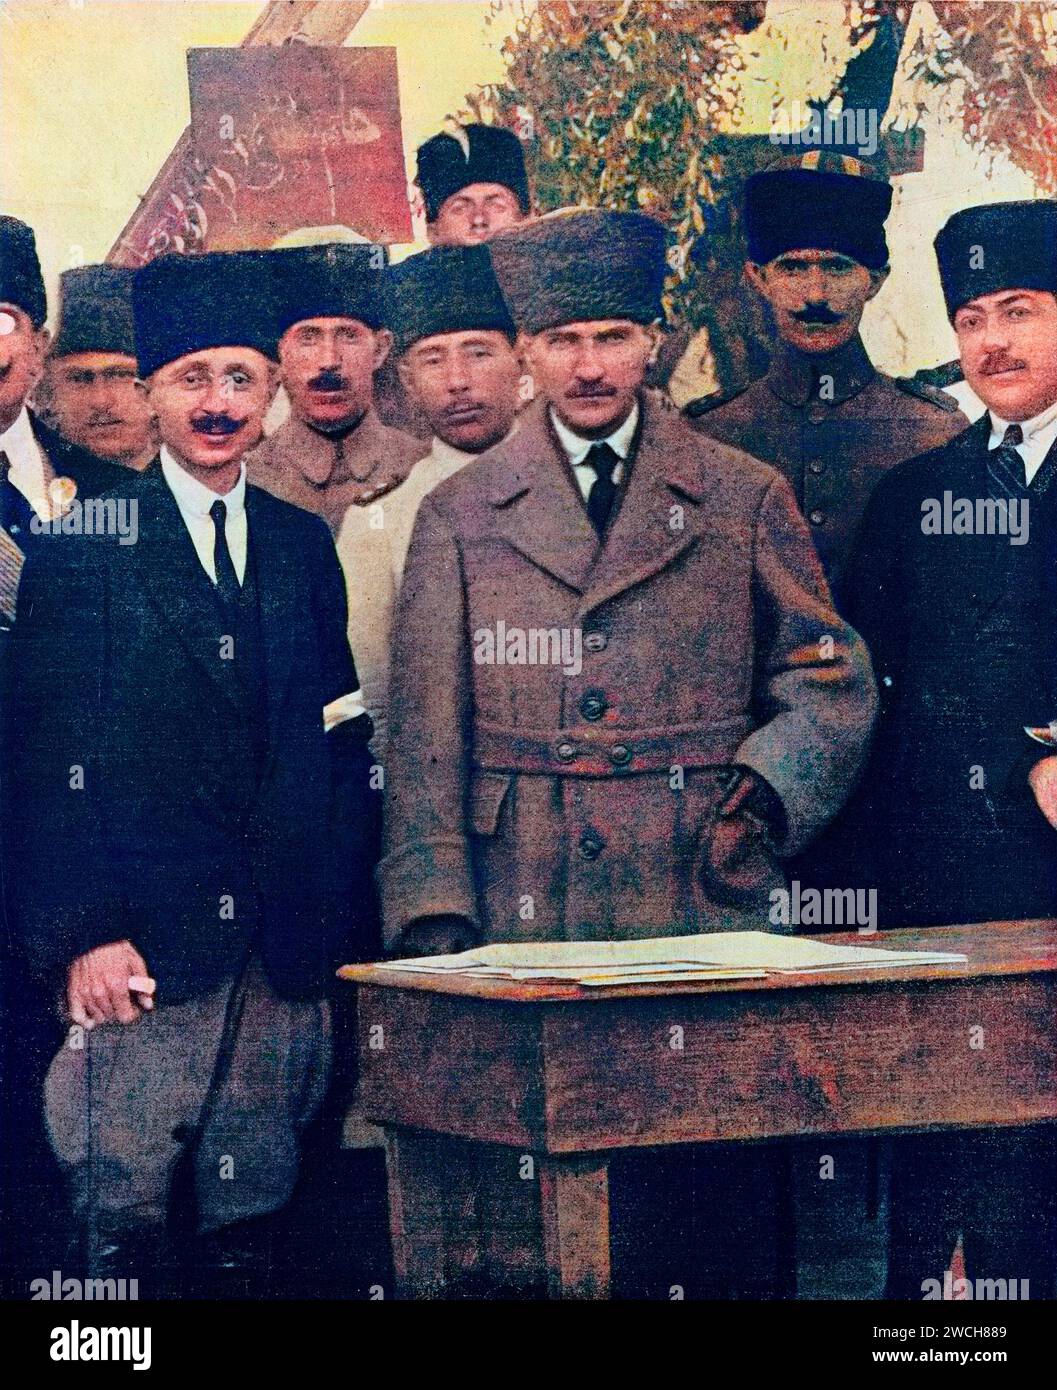 Officier de l'armée turque et politicien Mustafa Kemal Ataturk avec son chef d'état-major, Turquie, 1922 - plus tard photo colorée - plus tard coloriage. Banque D'Images